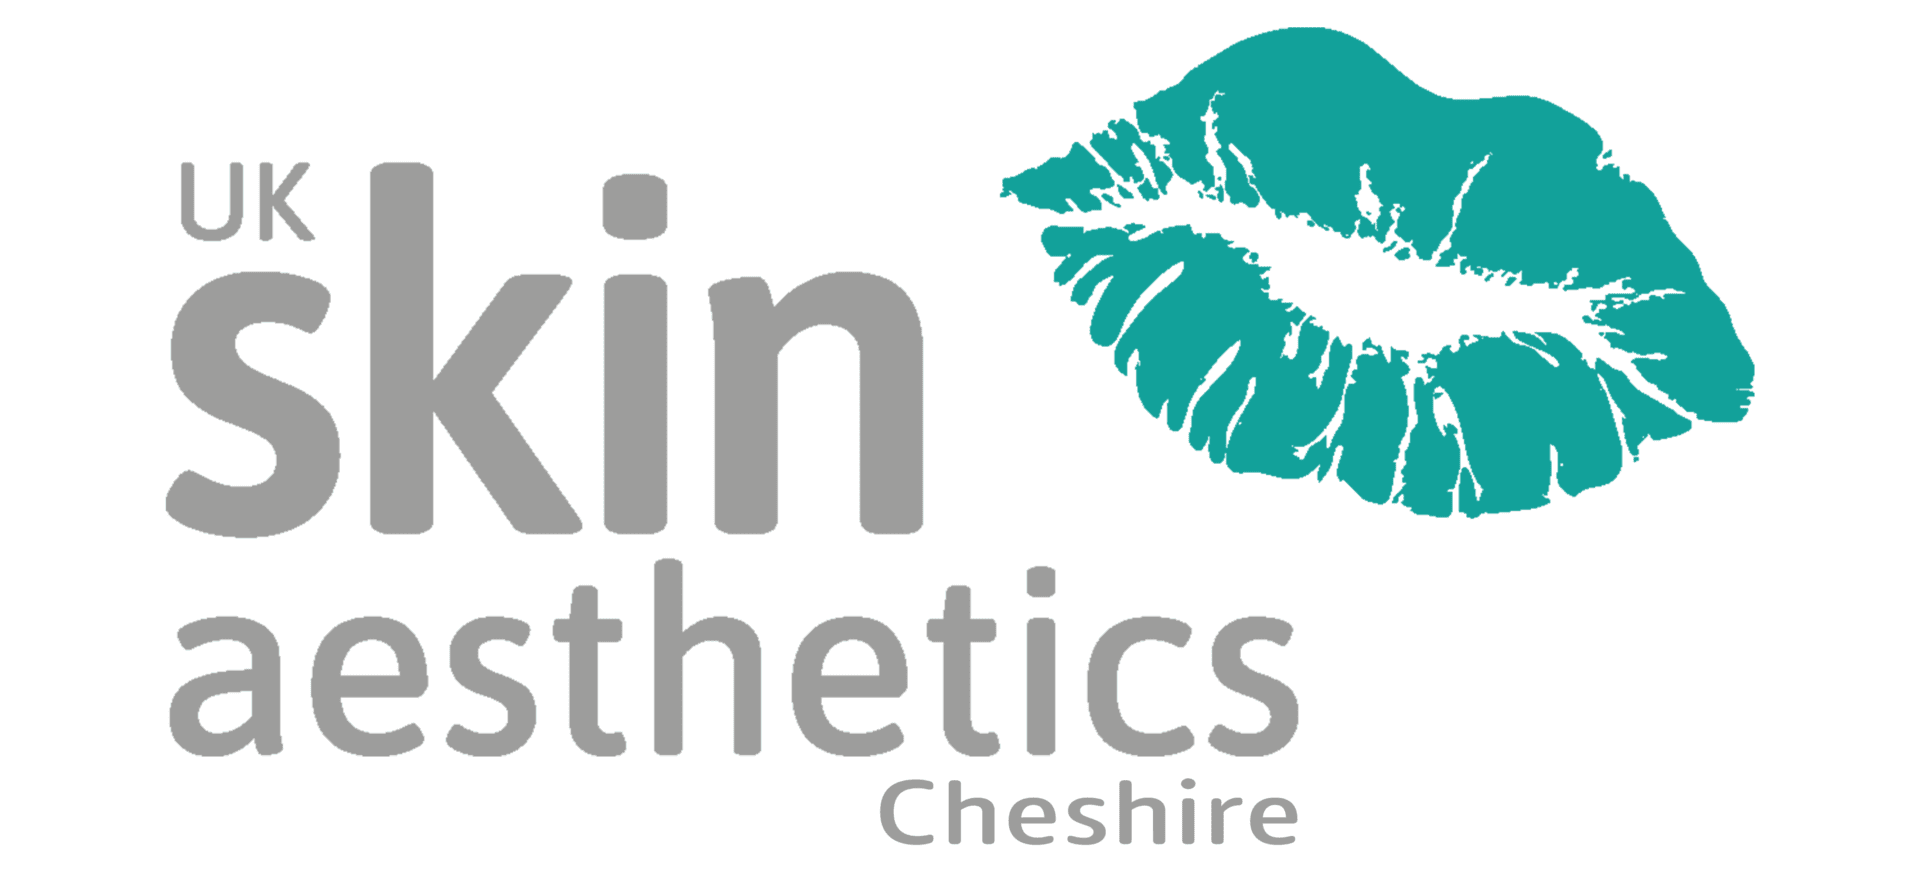 UK Skin Aesthetics Cheshire